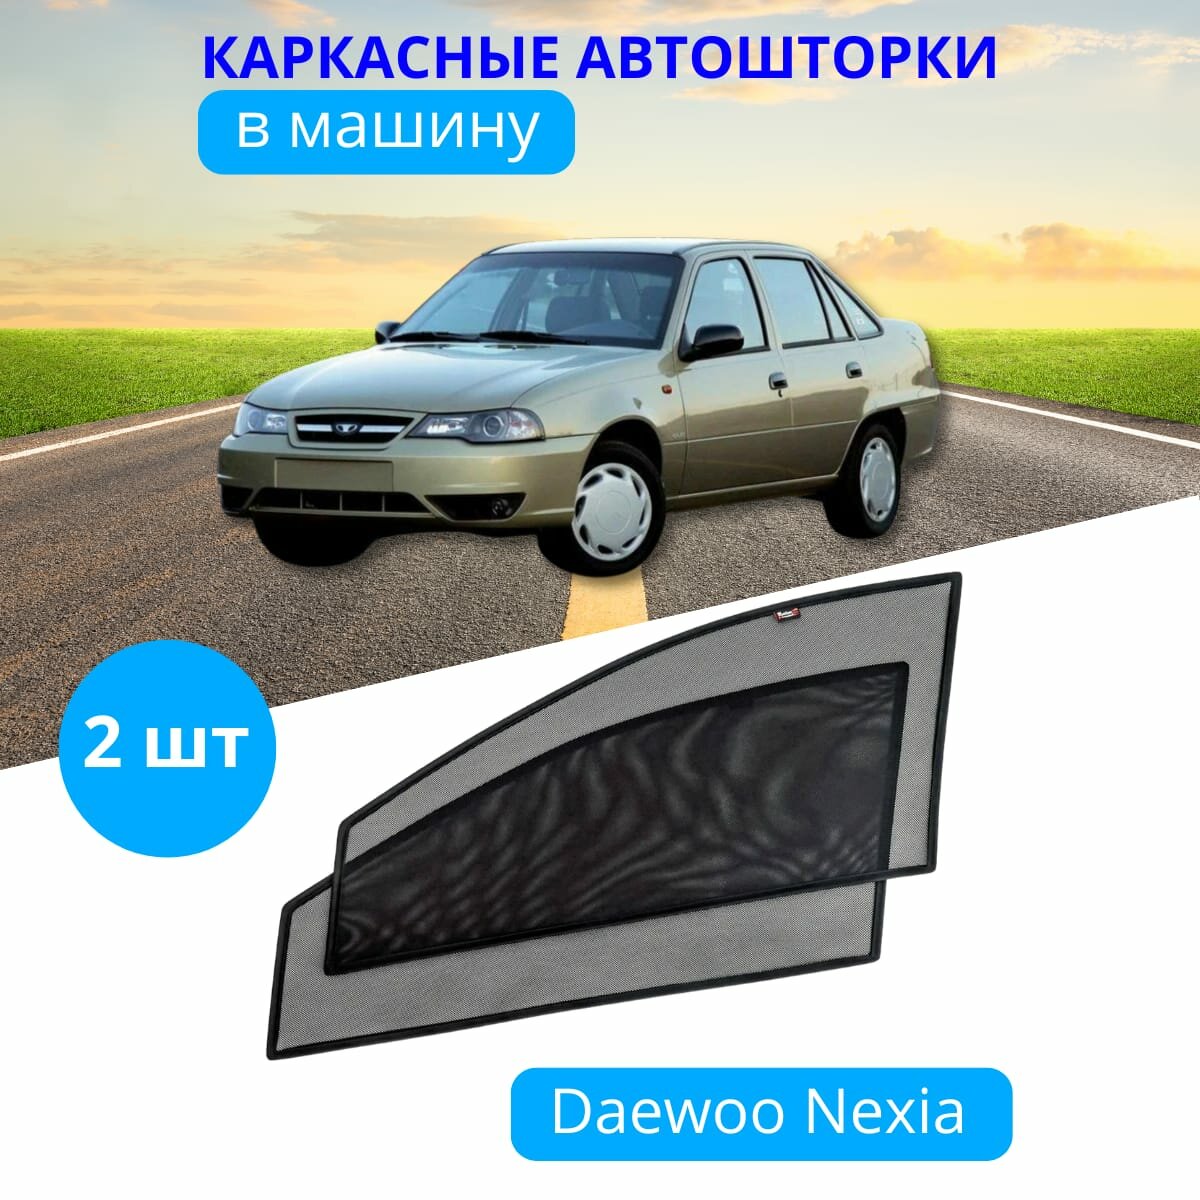 Автошторки каркасные на DAEWOO Nexia на передние двери на приклеиваемых магнитах с затемнением 90-95% от автоателье "Тачкин Гардероб".